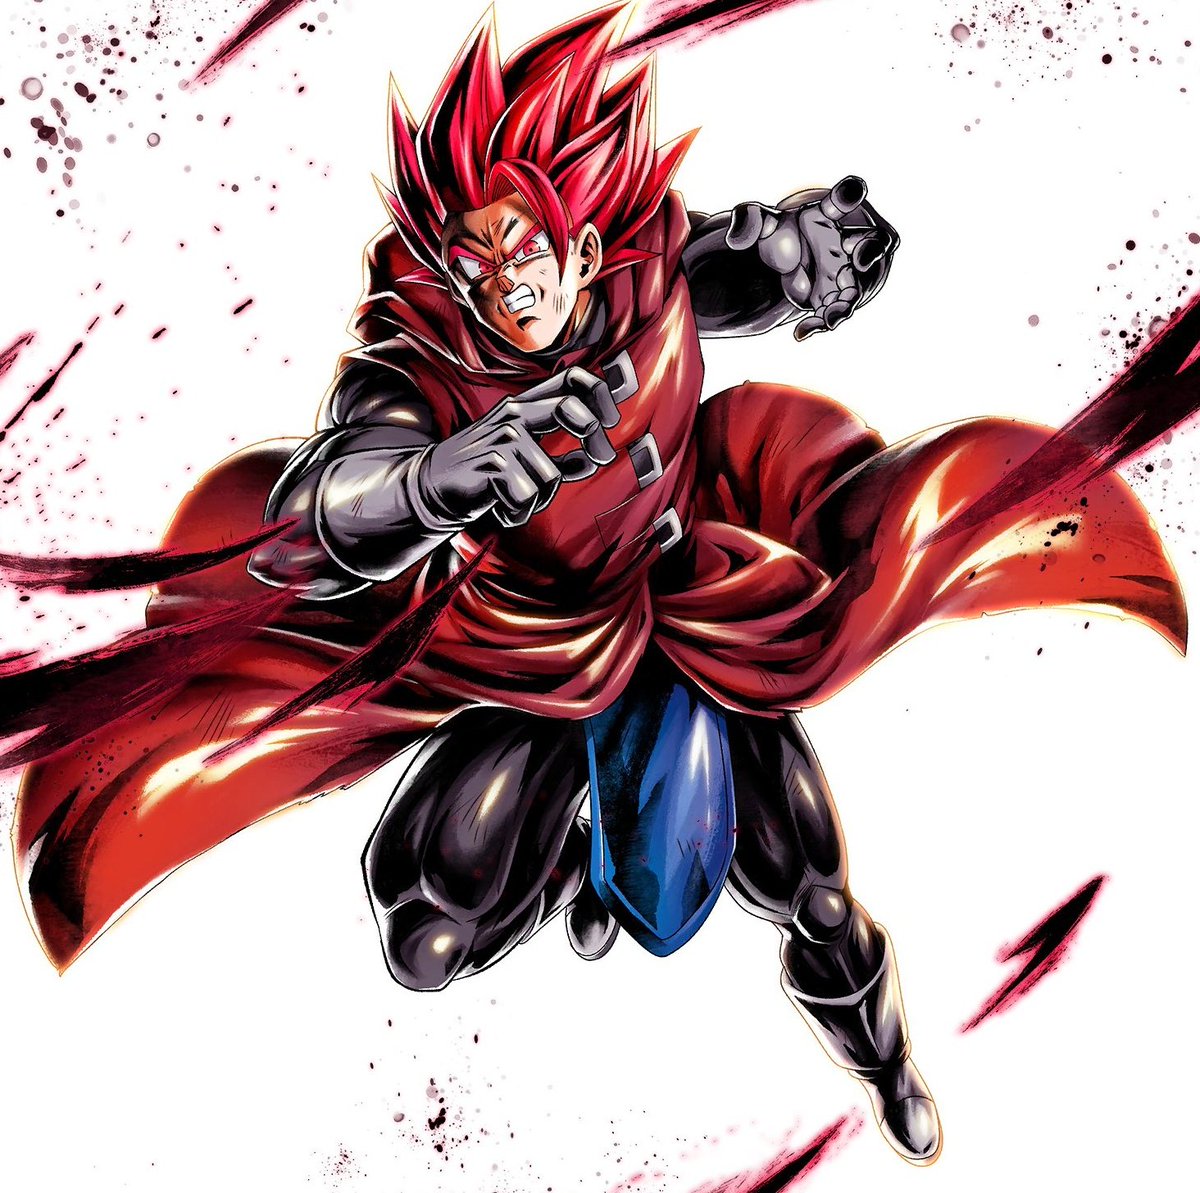 Super Saiyan God Dragon Ball Wiki Fandom - the return of a saiyan god roblox dragon ball z rage youtube